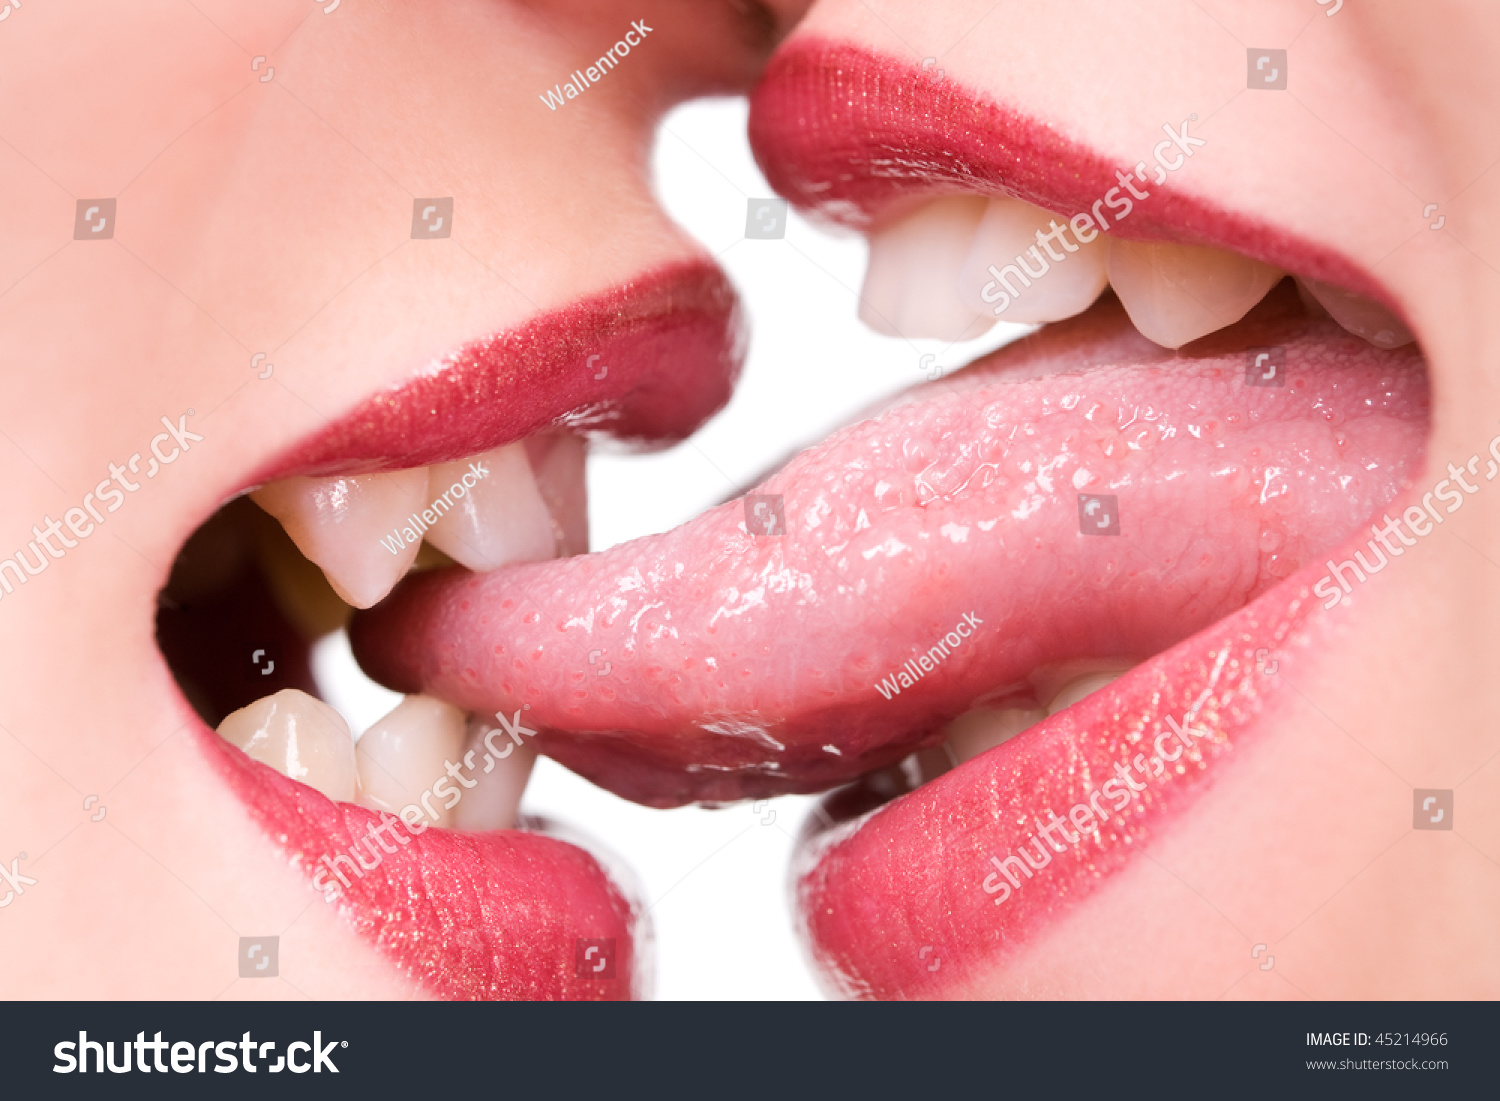 Красиво лижет языком. Губы с языком фото. Поцелуй в губы. Женский поцелуй. Поцелуй с языком.